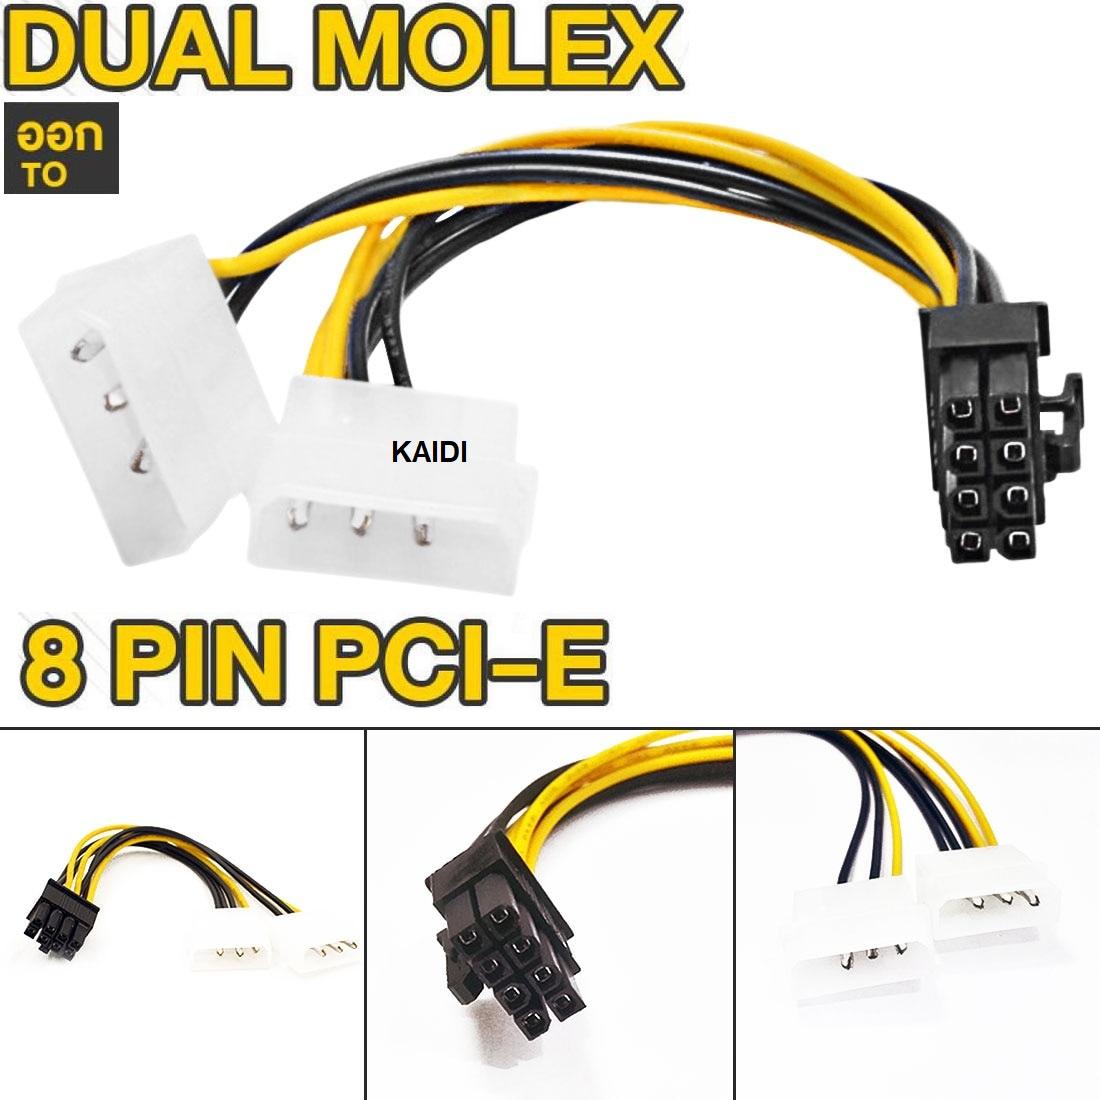 สายแปลง 4 Pin 2 หัวออก 8 Pin PCI-E GPU การ์ดจอ กราฟฟิกการ์ด โมเล็กซ์ อแดปเตอร์ Dual Molex LP4 4 Pin to 8 Pin PCI-E Express Converter Adapter Power Cable Wire ความยาว 16 ซม.